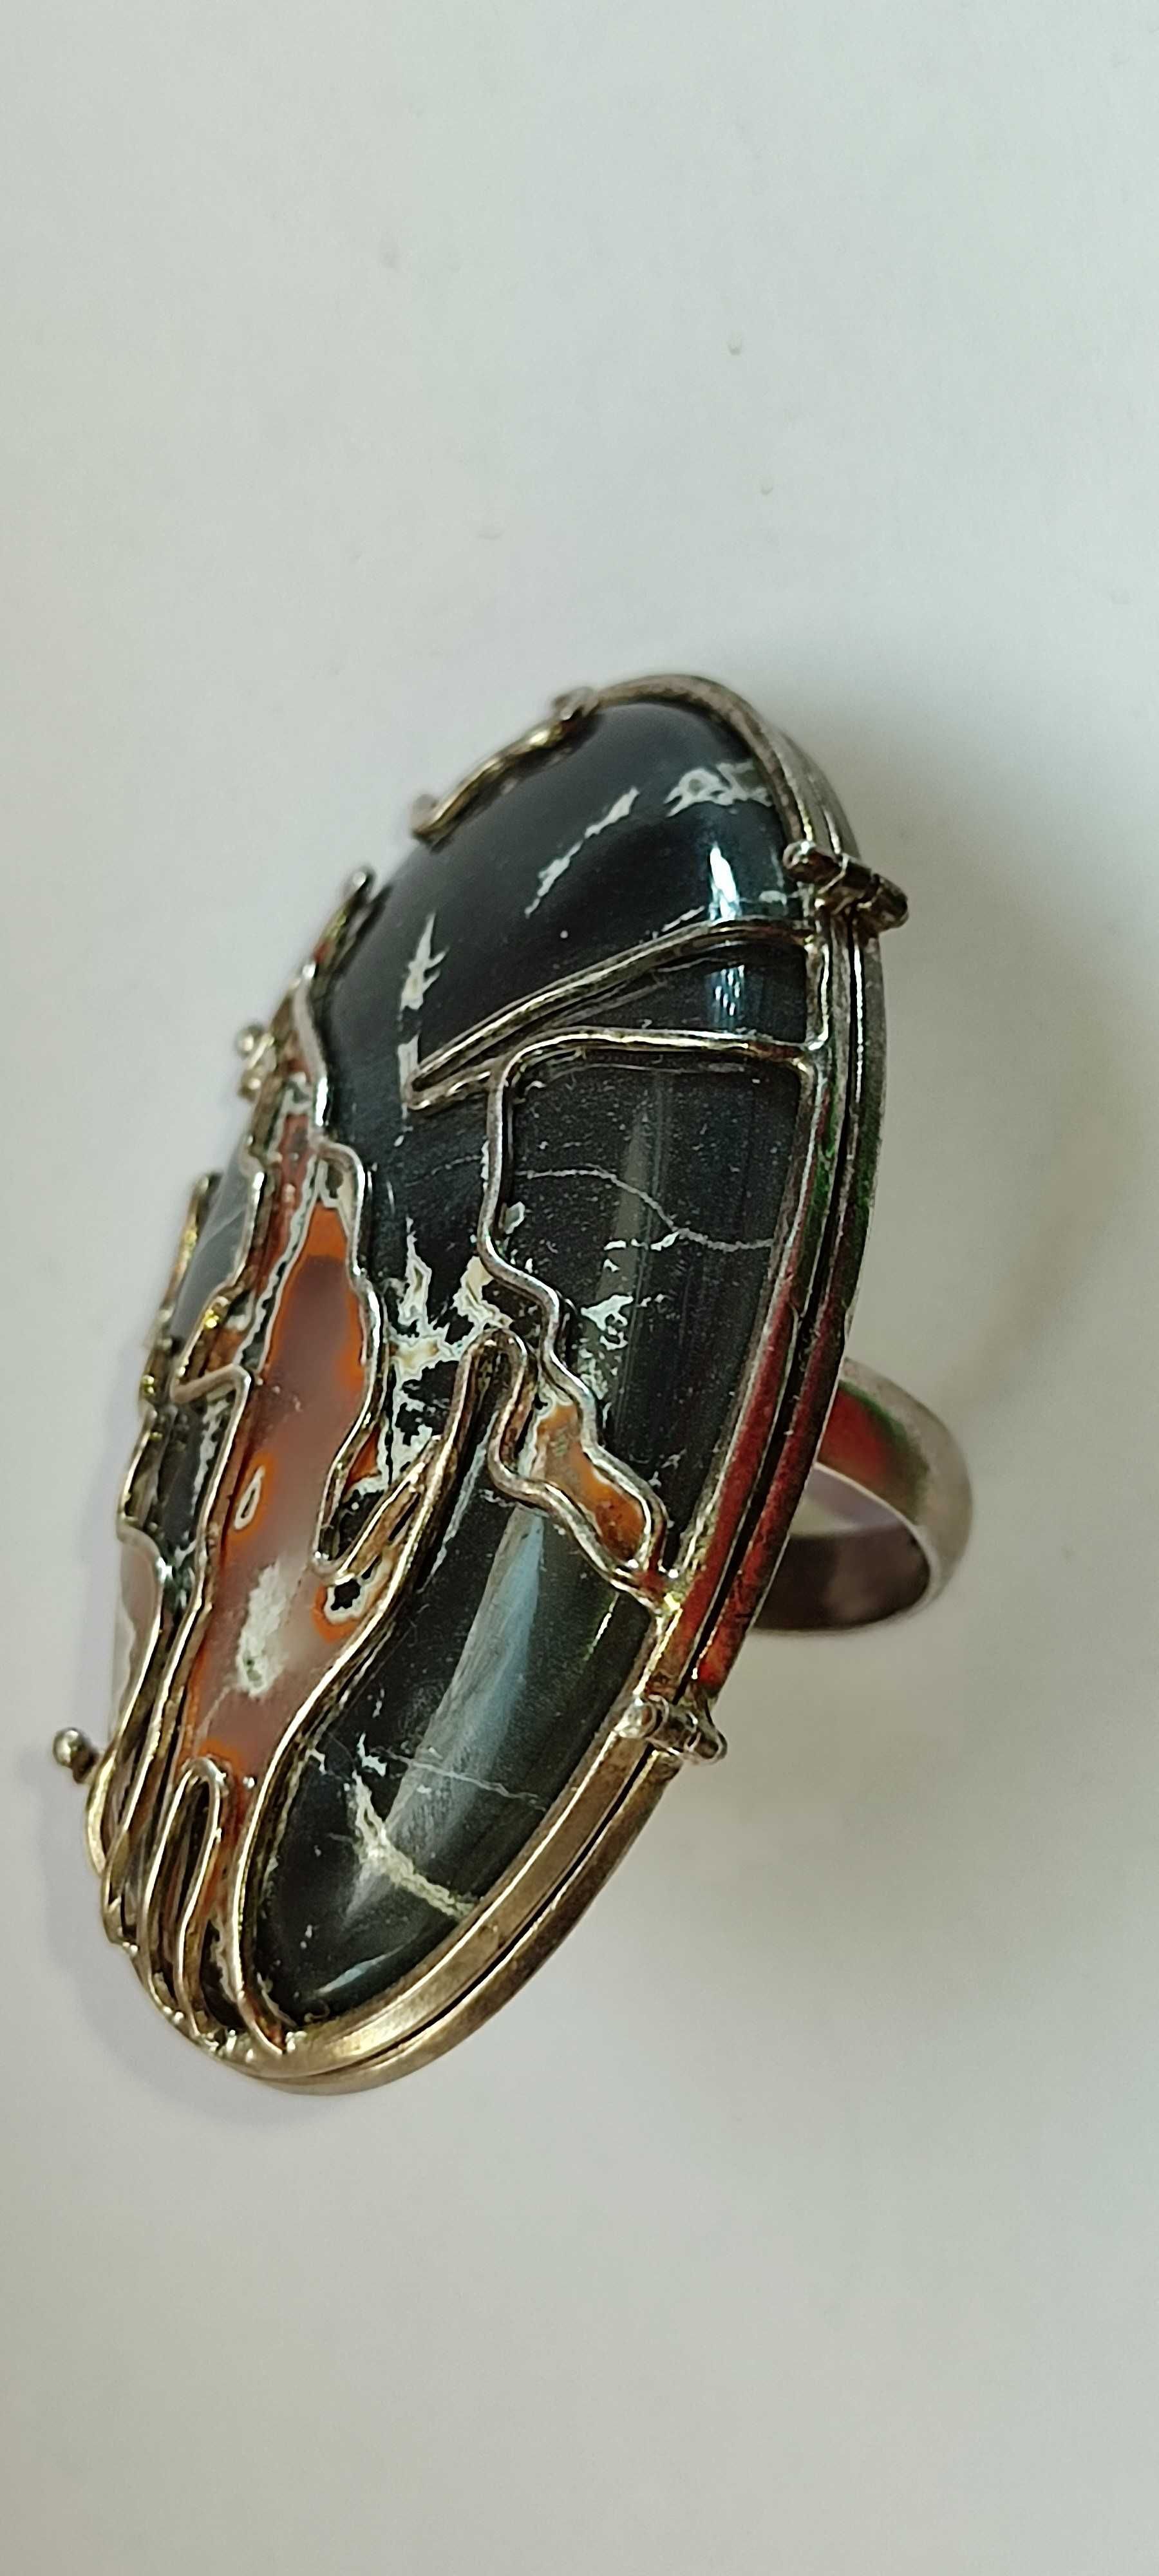 Шикарное серебряное кольцо с крупным камнем АГАТ